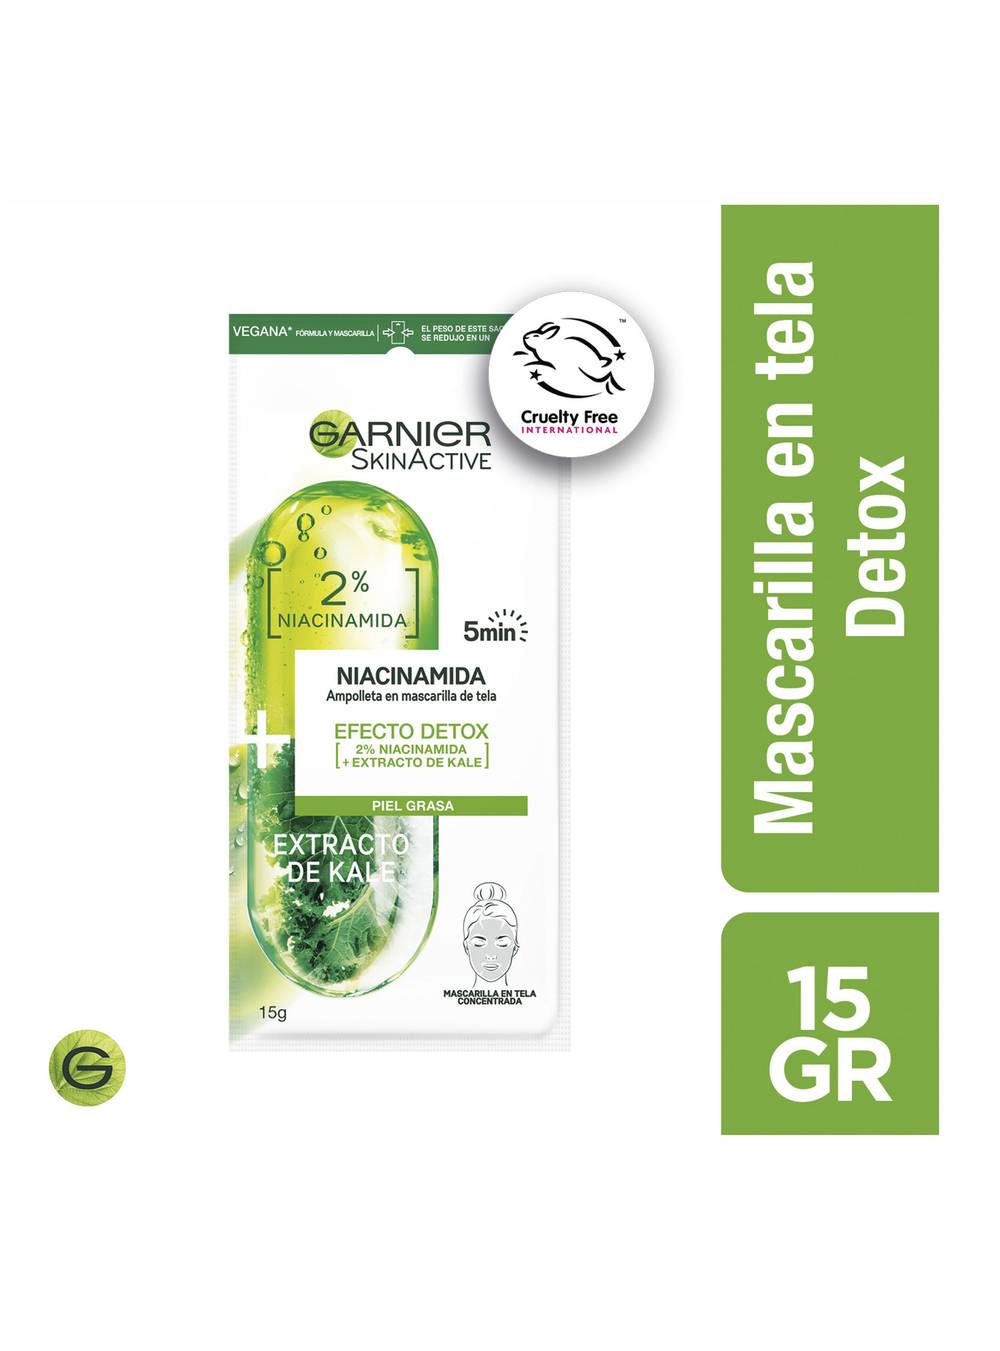 Garnier skin active mascarilla en tela ampolla kale detox (sobre 15 g)